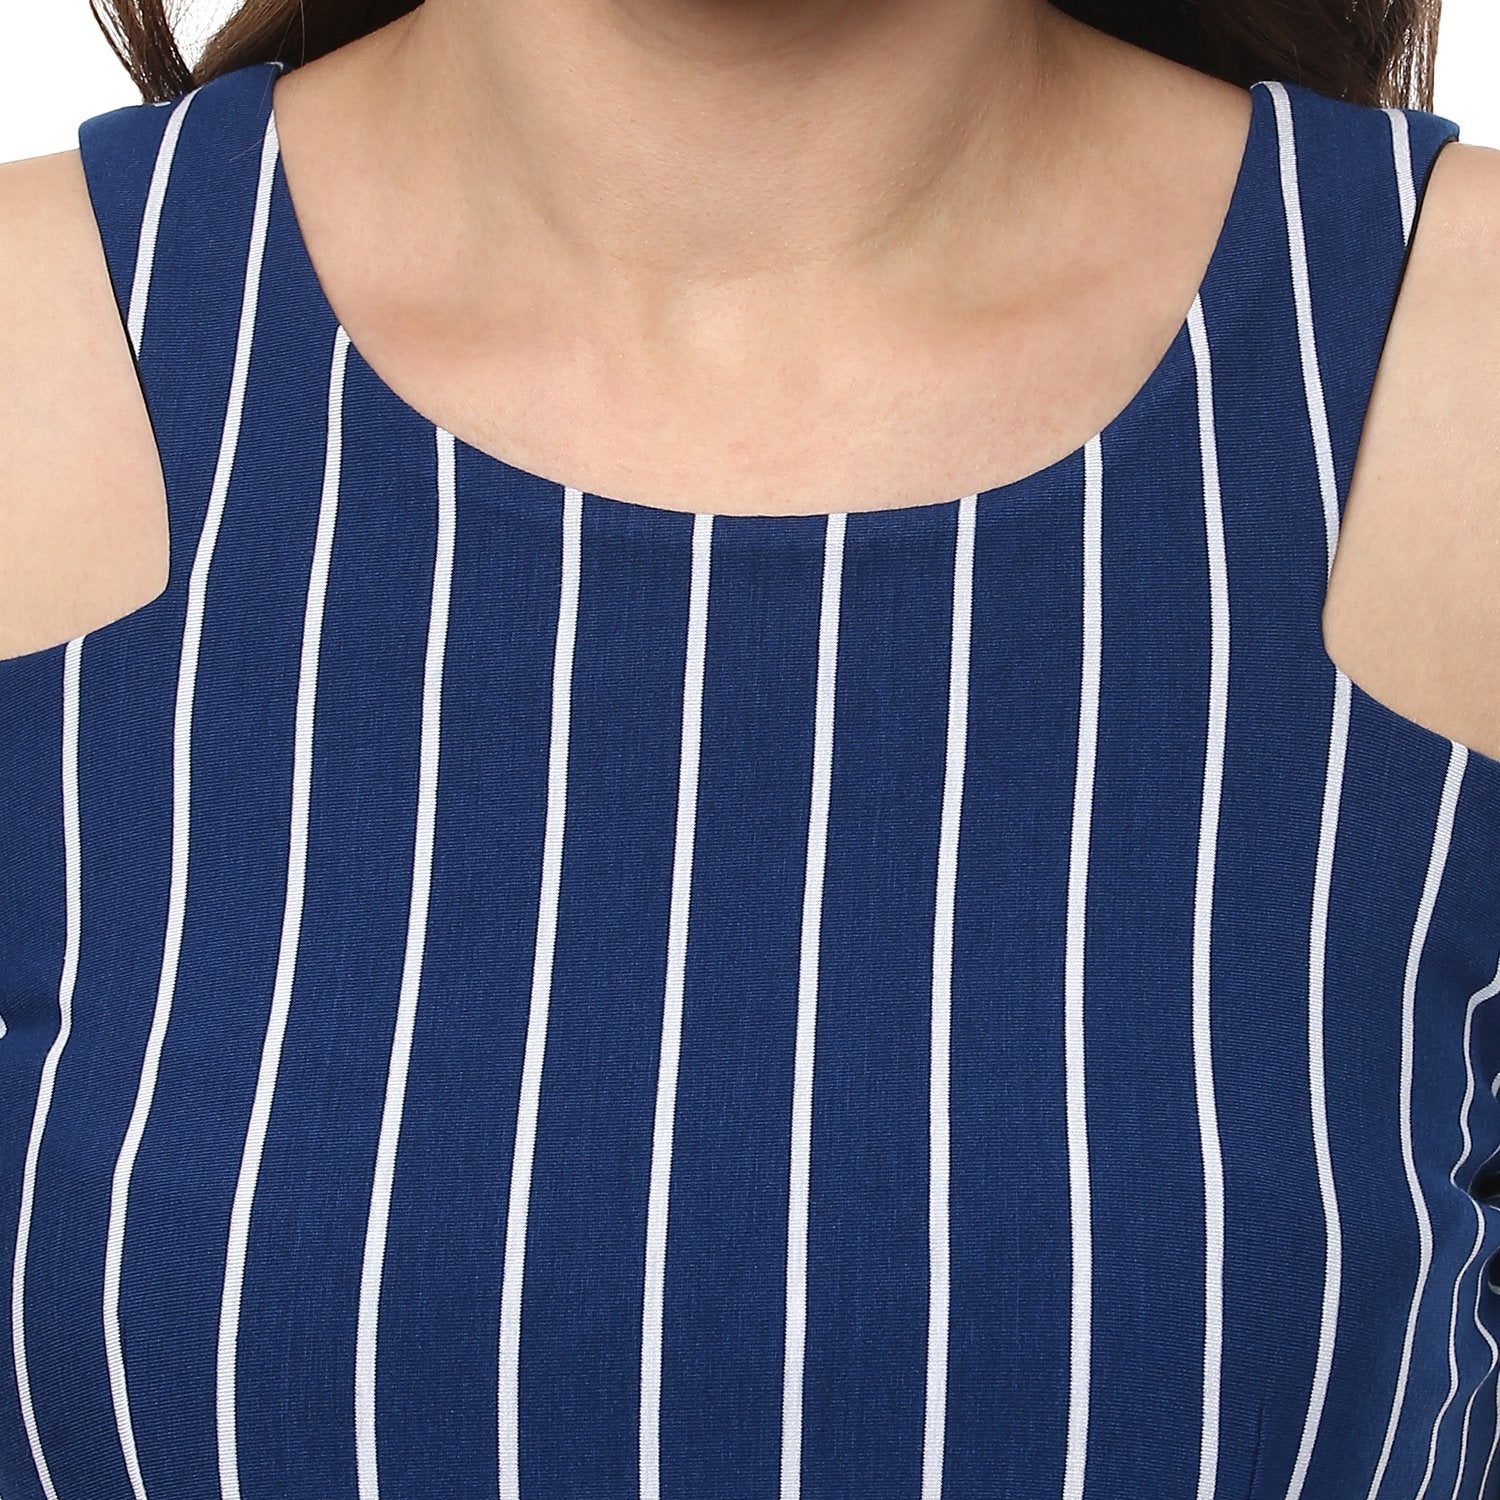 Women's Stripe Dress With Shoulder -Cut Details - Pannkh